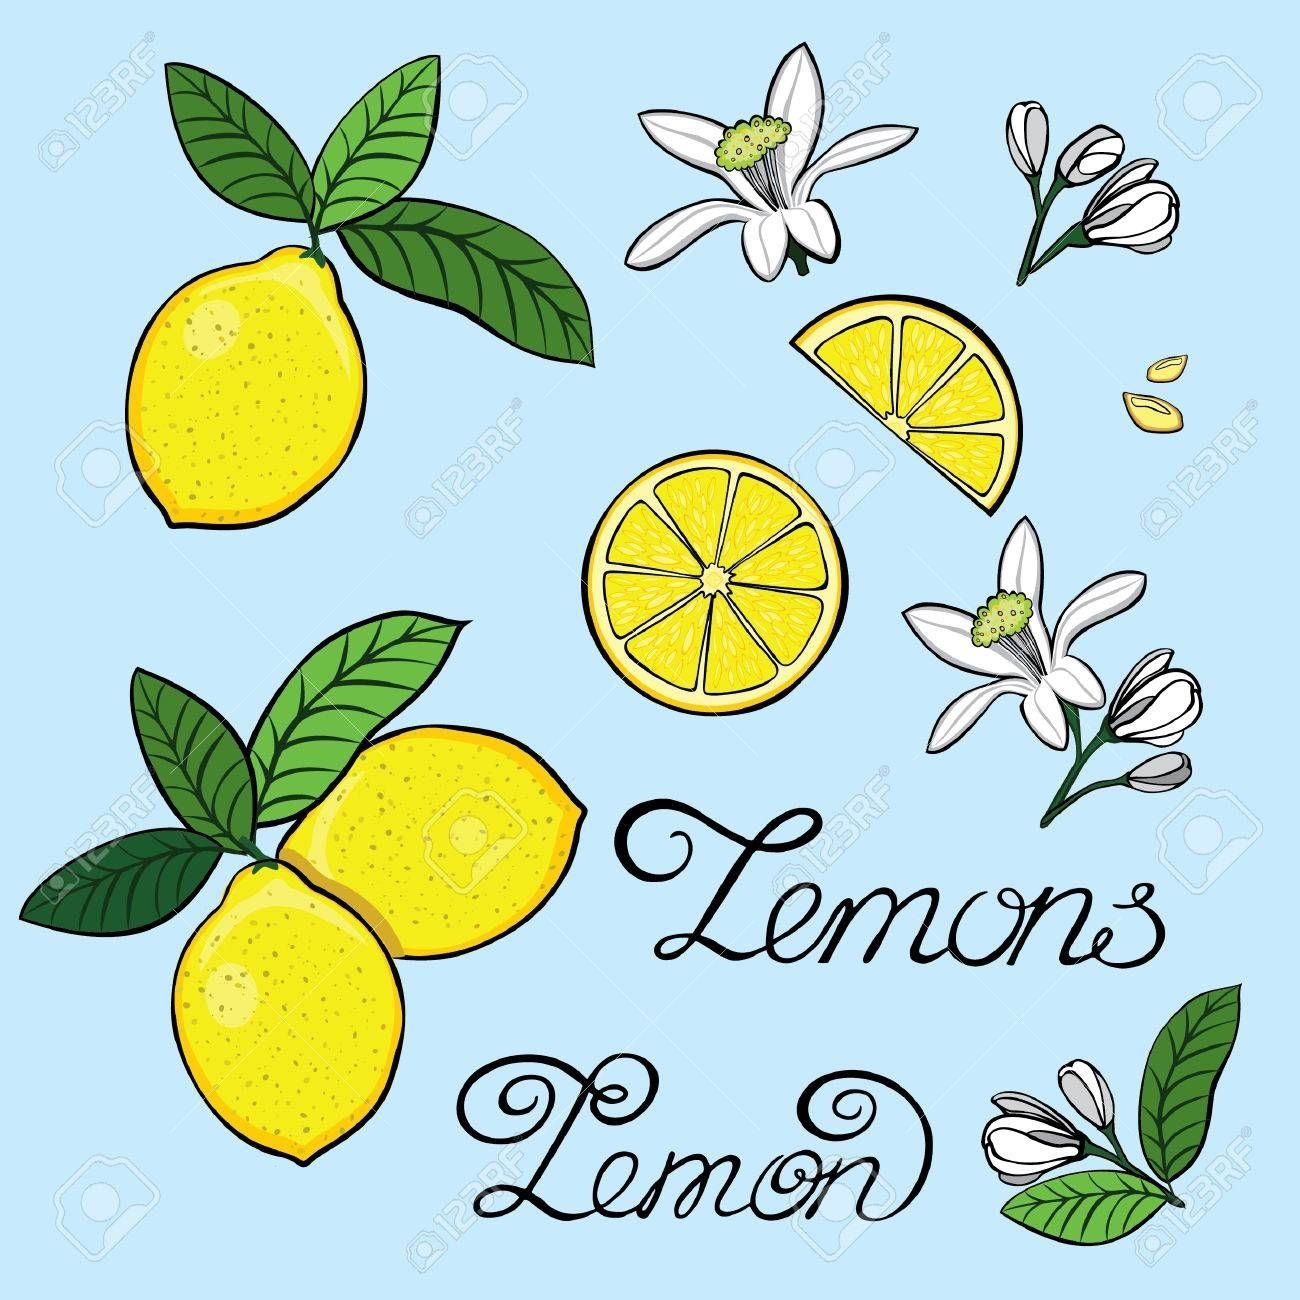 Elements For The Design Of A Lemon, Lemon Tree Flowers, Grain Intended For Lemon Wall Art (View 8 of 20)